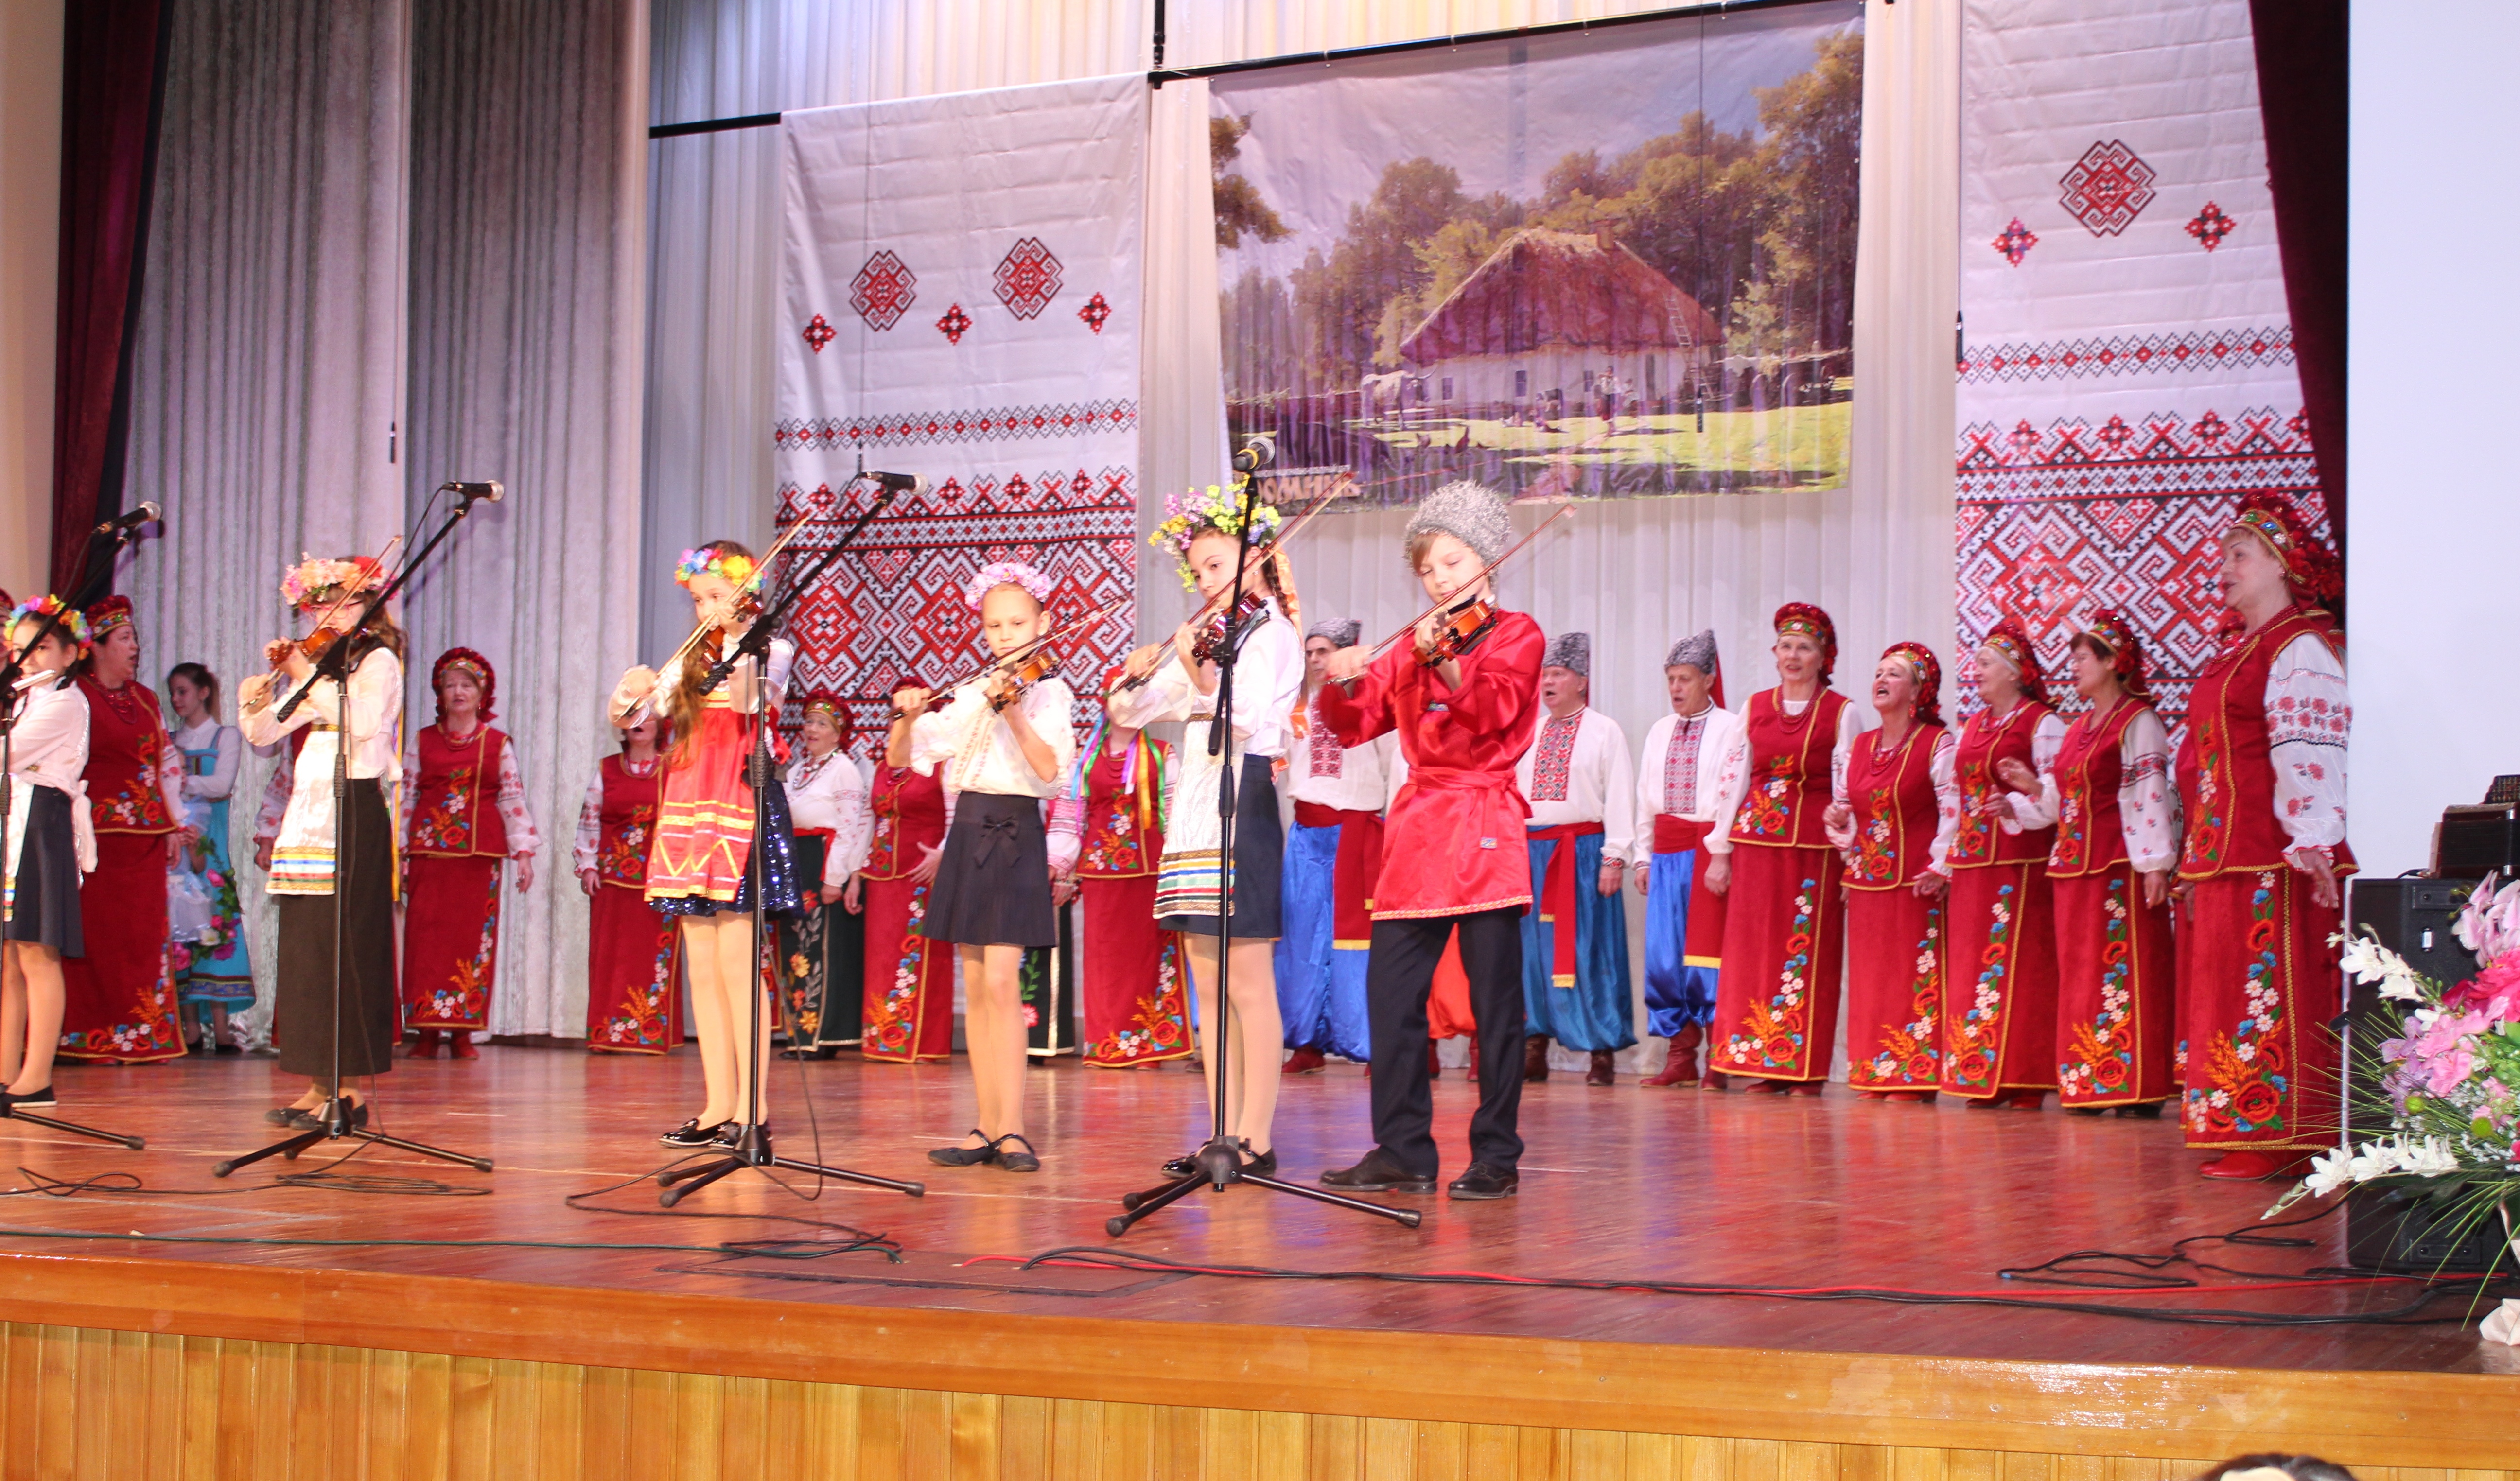 Межнациональный праздник «Народов Самары единая семья» показал многоликую палитру народной культуры